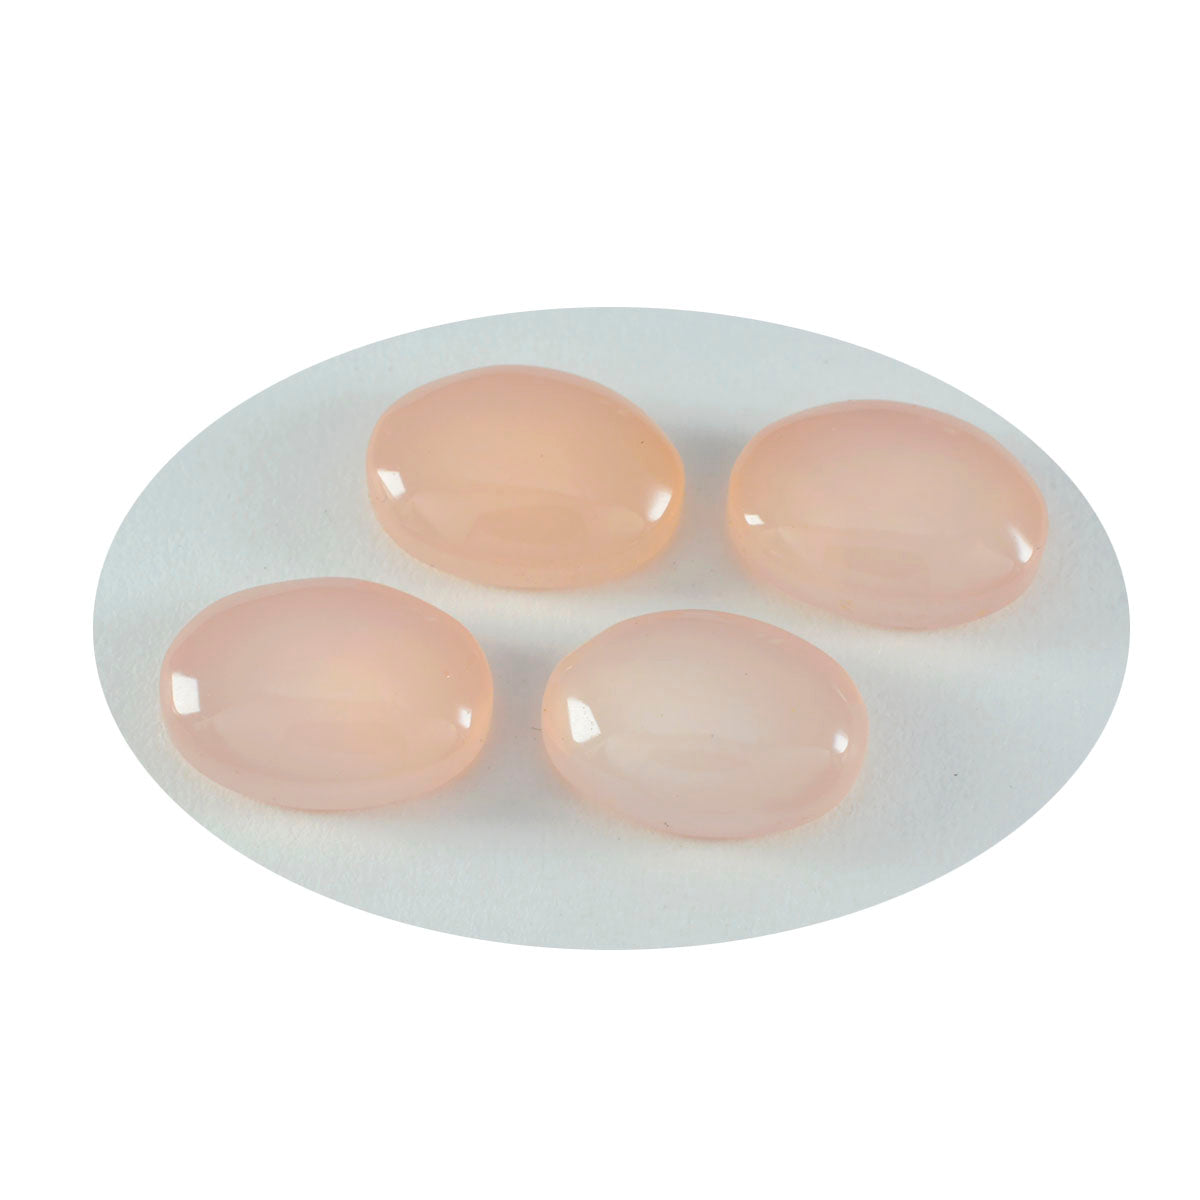 Riyogems 1PC roze rozenkwarts cabochon 9x11 mm ovale vorm fantastische kwaliteit losse edelsteen